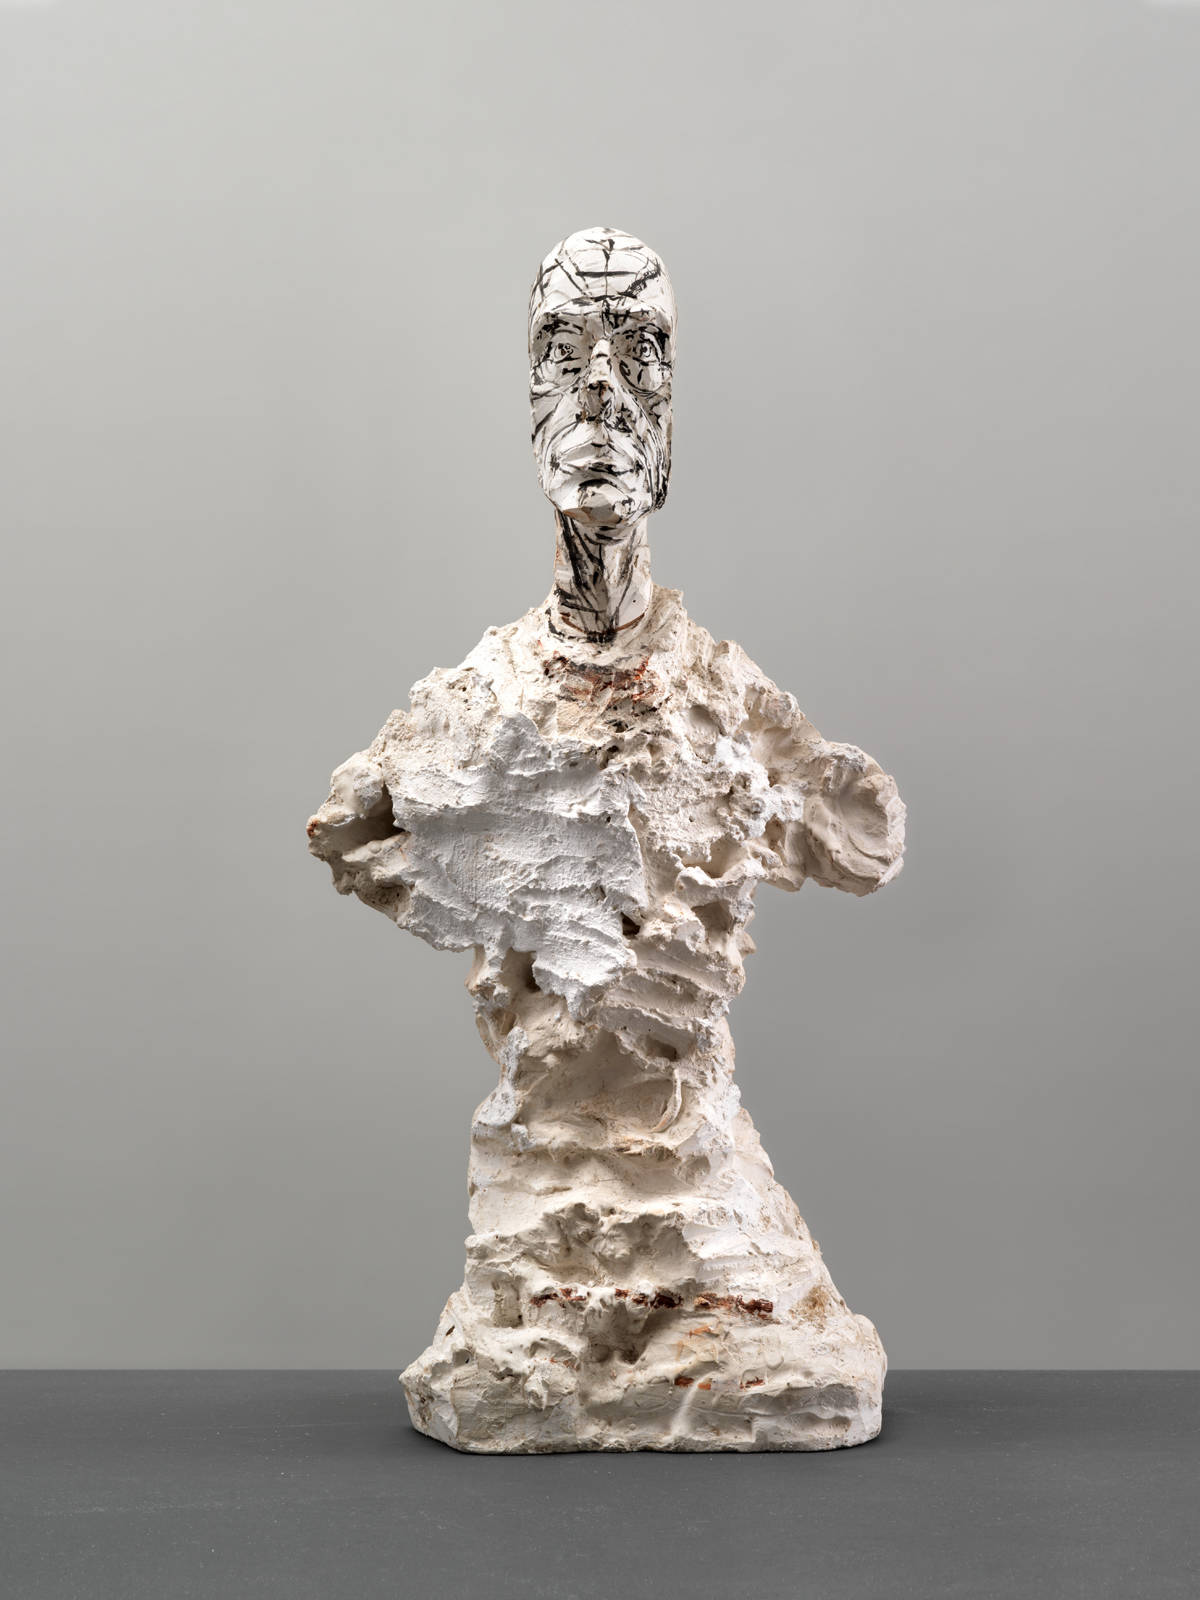 Alberto Giacometti / Kunsthaus Zürich / Alberto Giacometti Stiftung